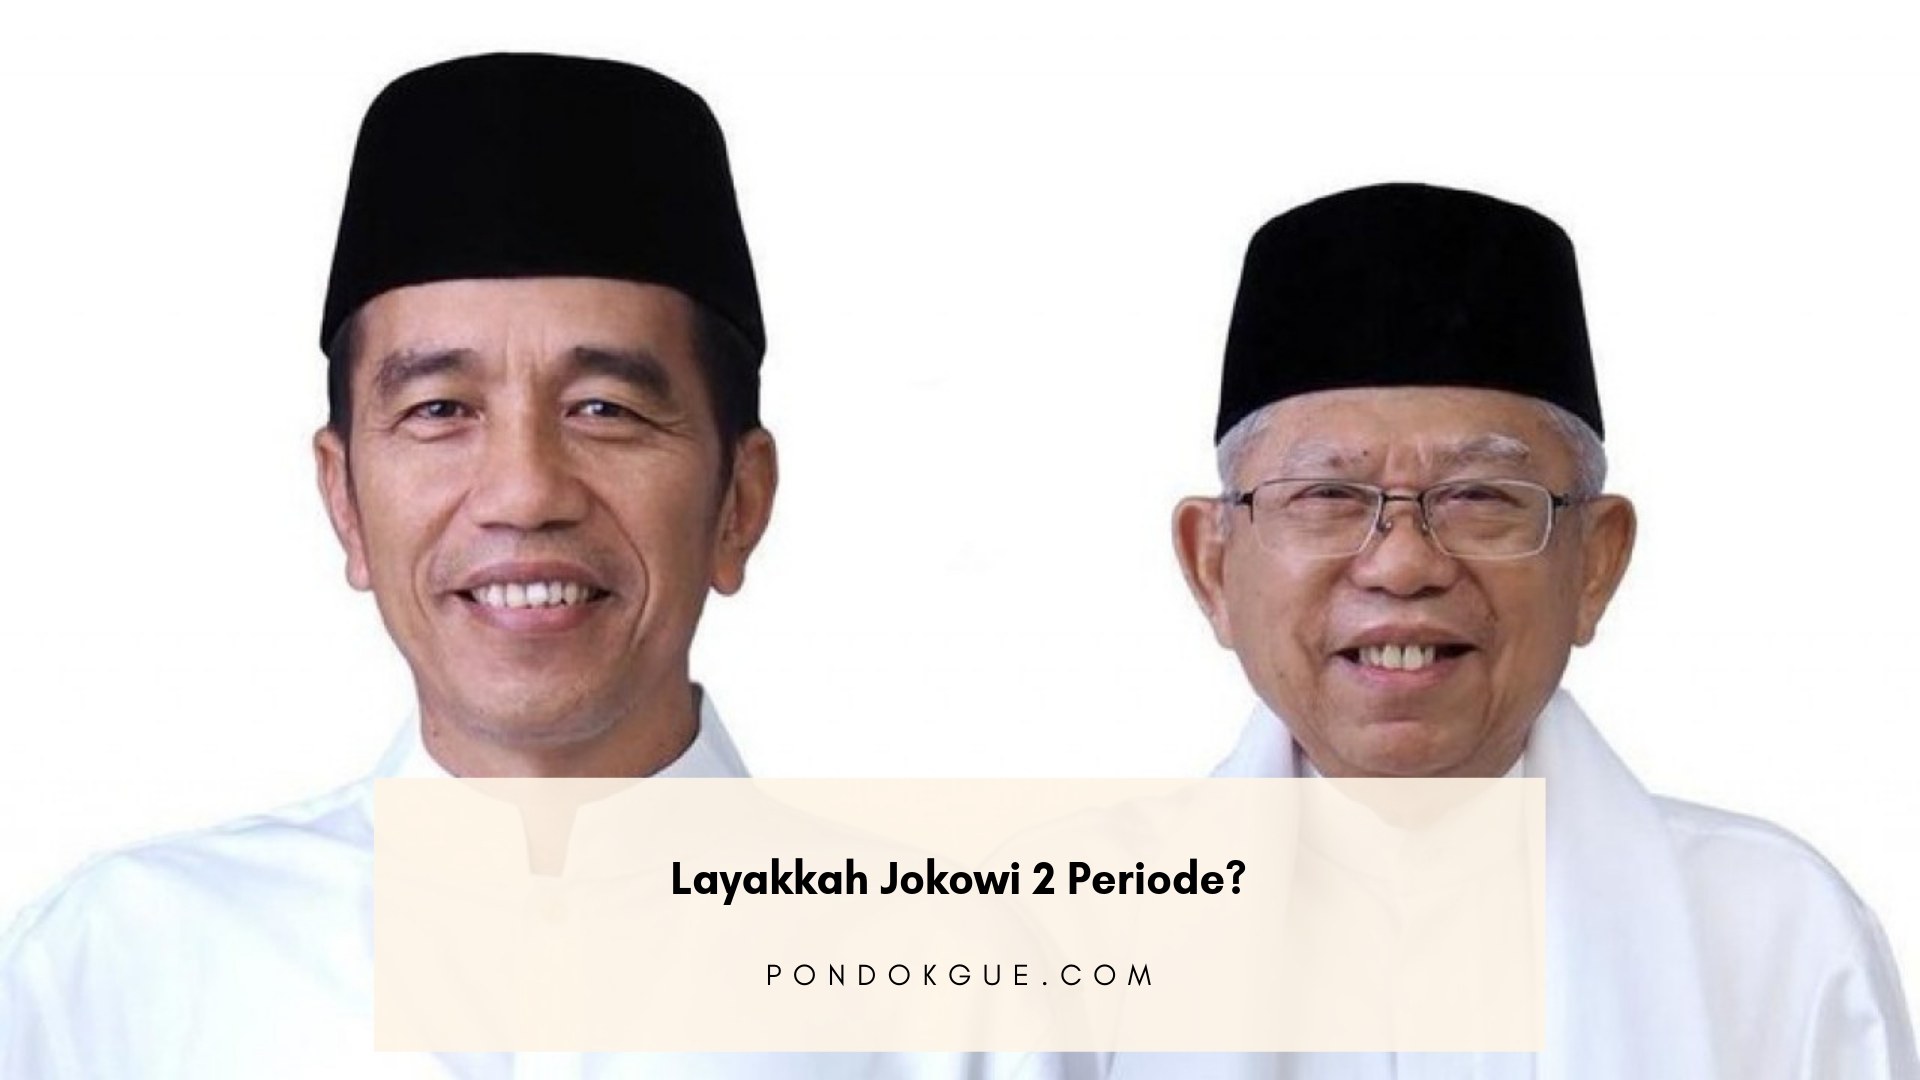 Layakkah Jokowi 2 Periode?